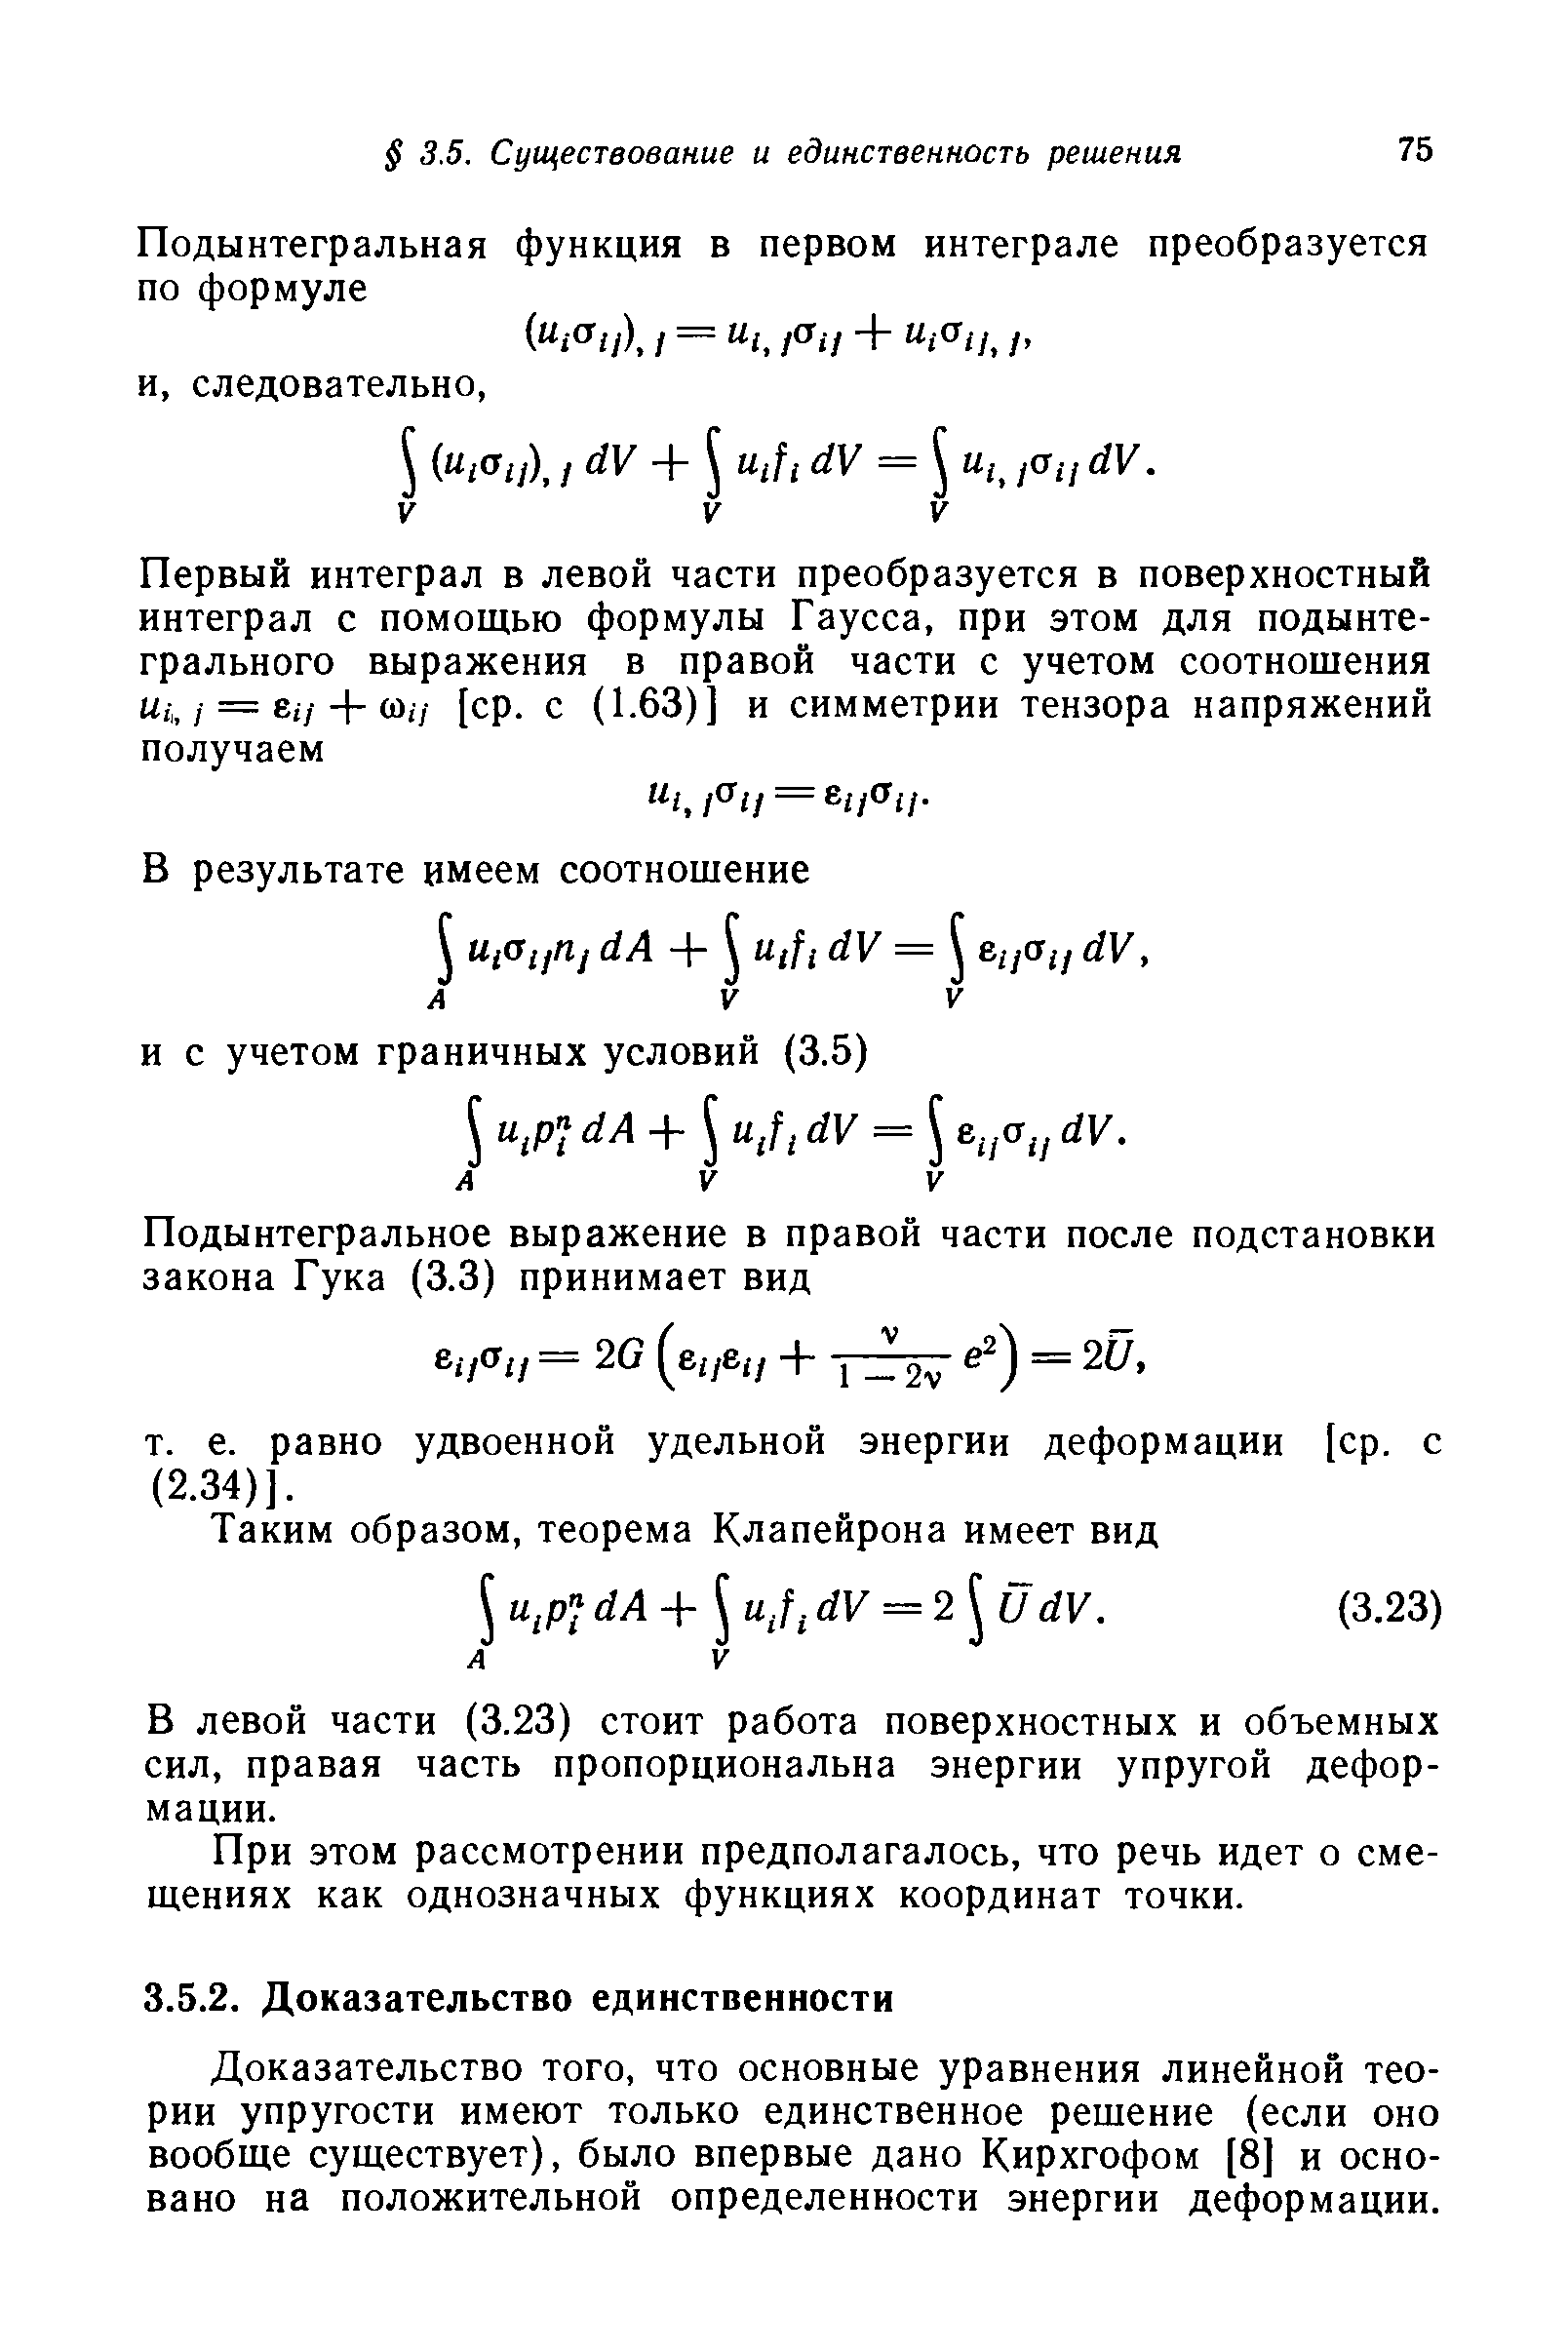 Доказательство того, что основные уравнения линейной теории упругости имеют только единственное решение (если оно вообще существует), было впервые дано Кирхгофом [8] и основано на положительной определенности энергии деформации.
